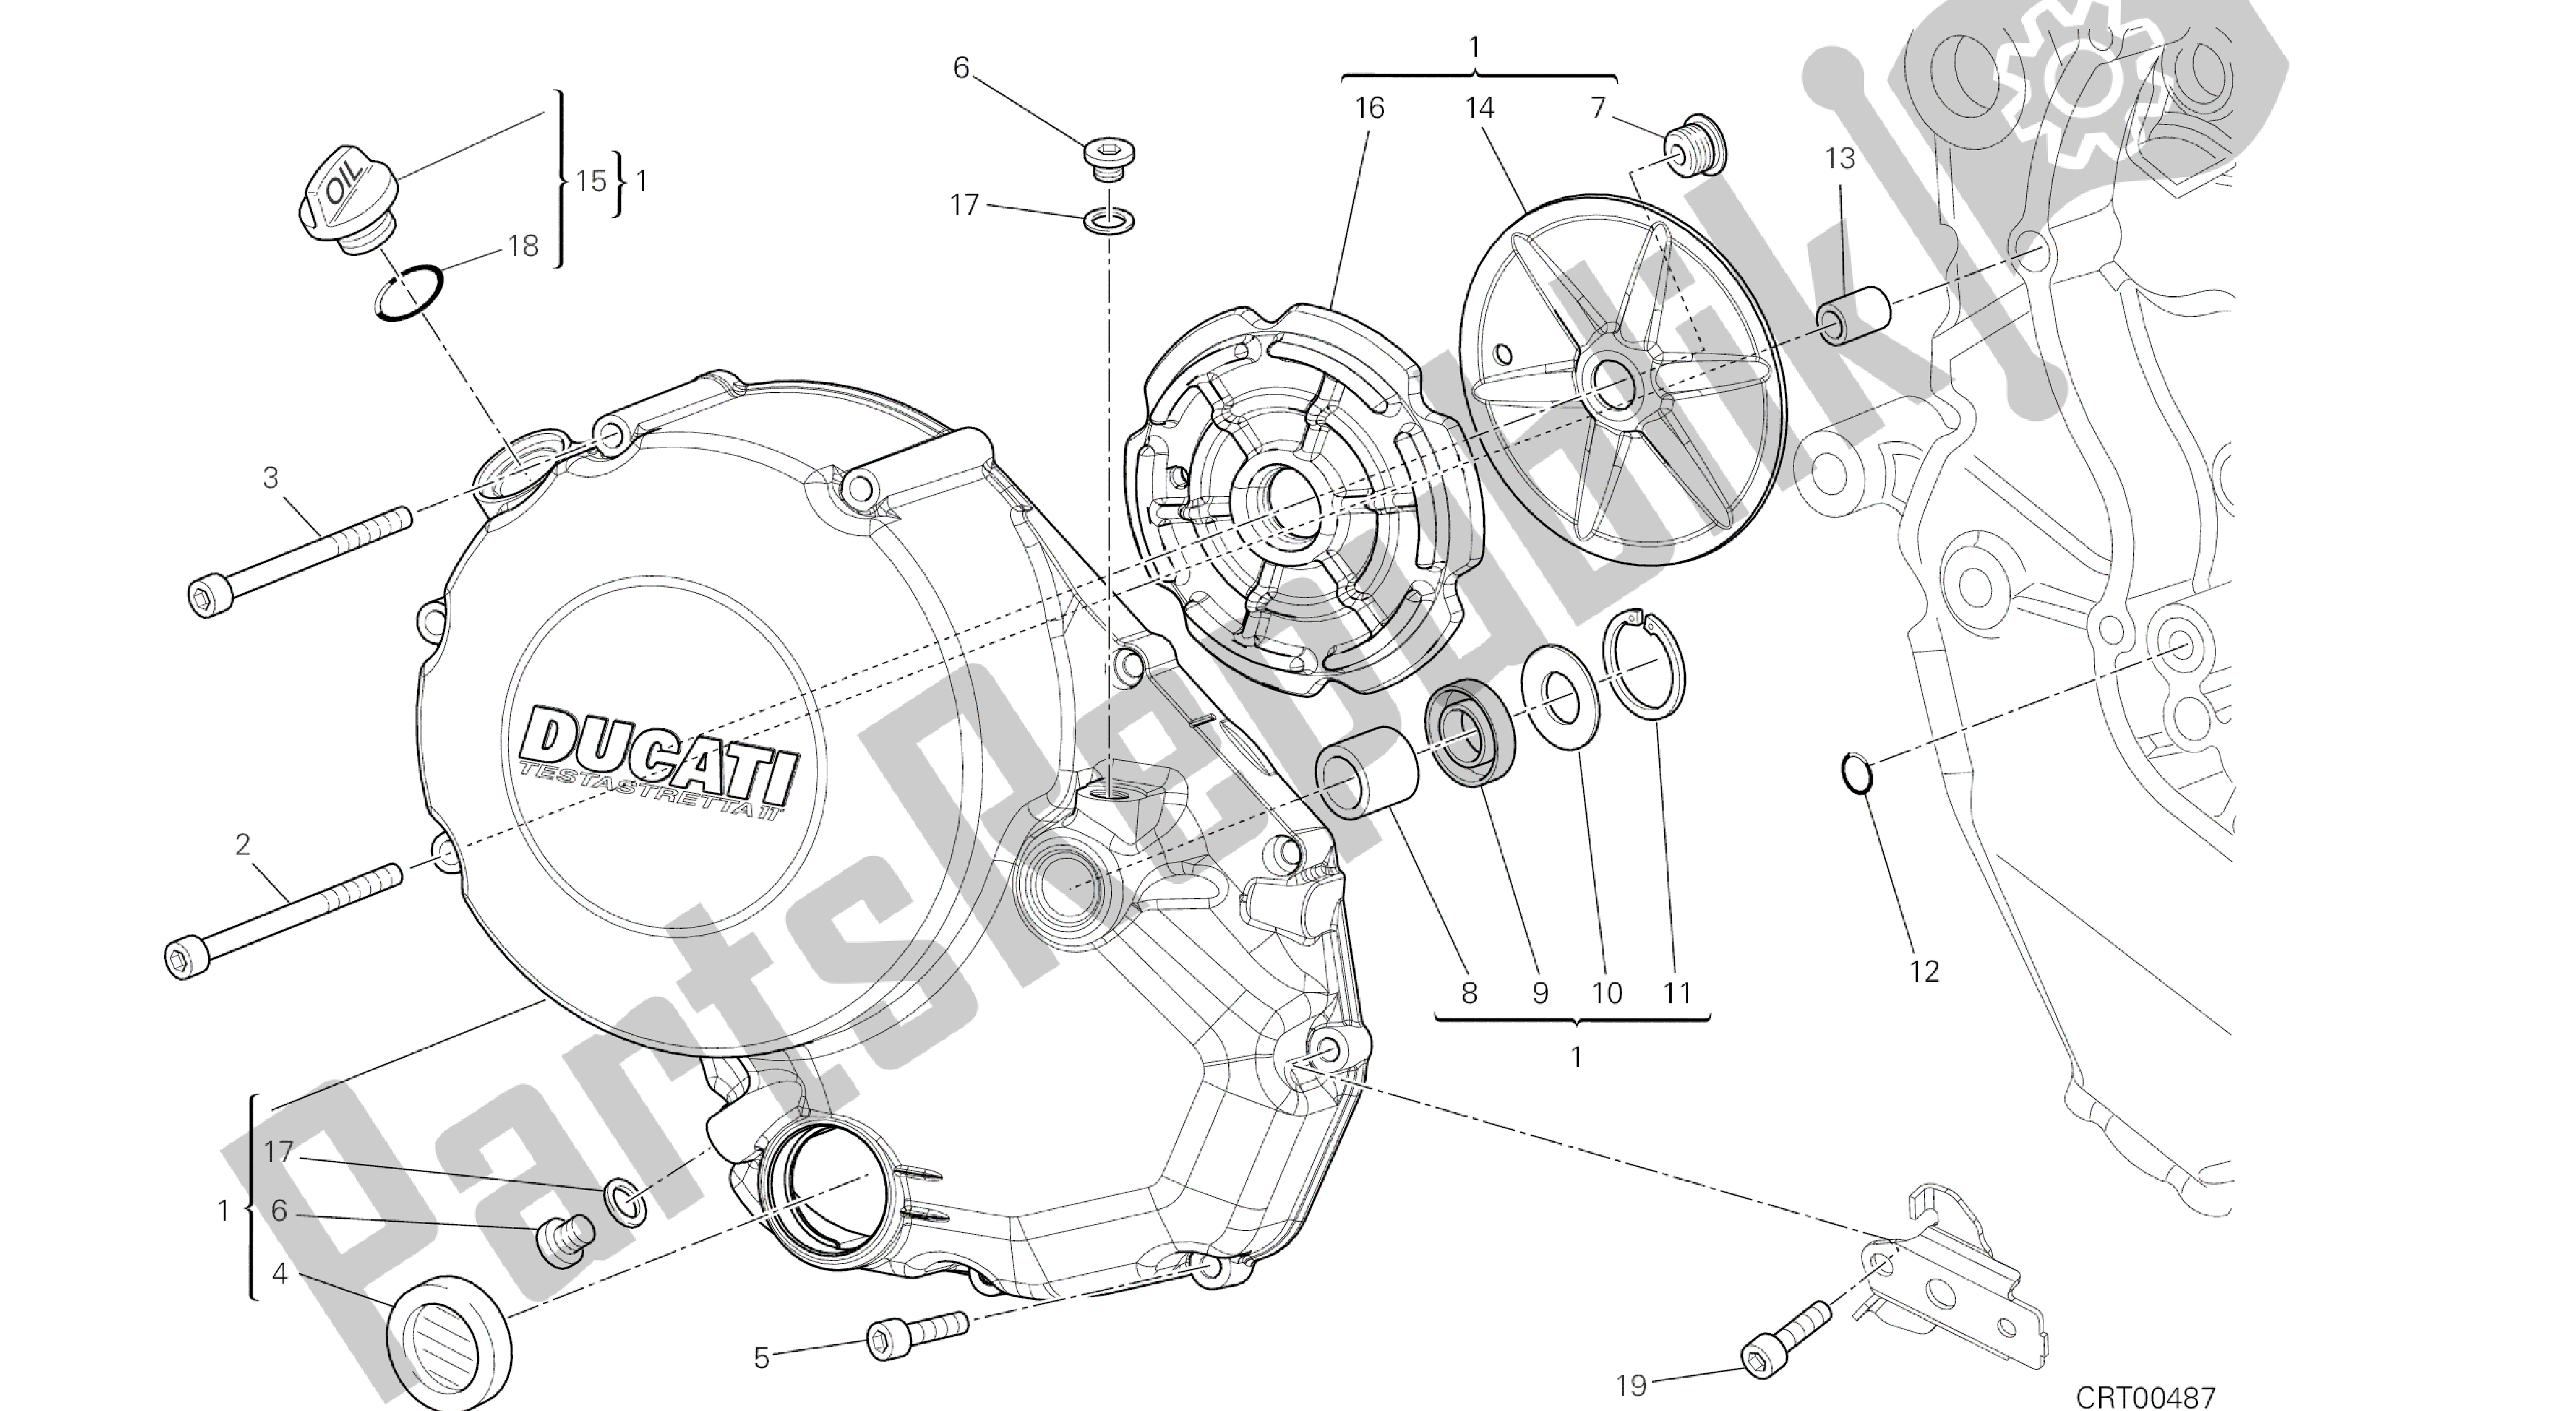 Tutte le parti per il Disegno 005 - Coperchio Frizione [mod: Ms1200st; Xst: Aus, Chn, Eur, Fra, Jap, Tha] Gruppo Motore del Ducati Multistrada S Touring 1200 2014